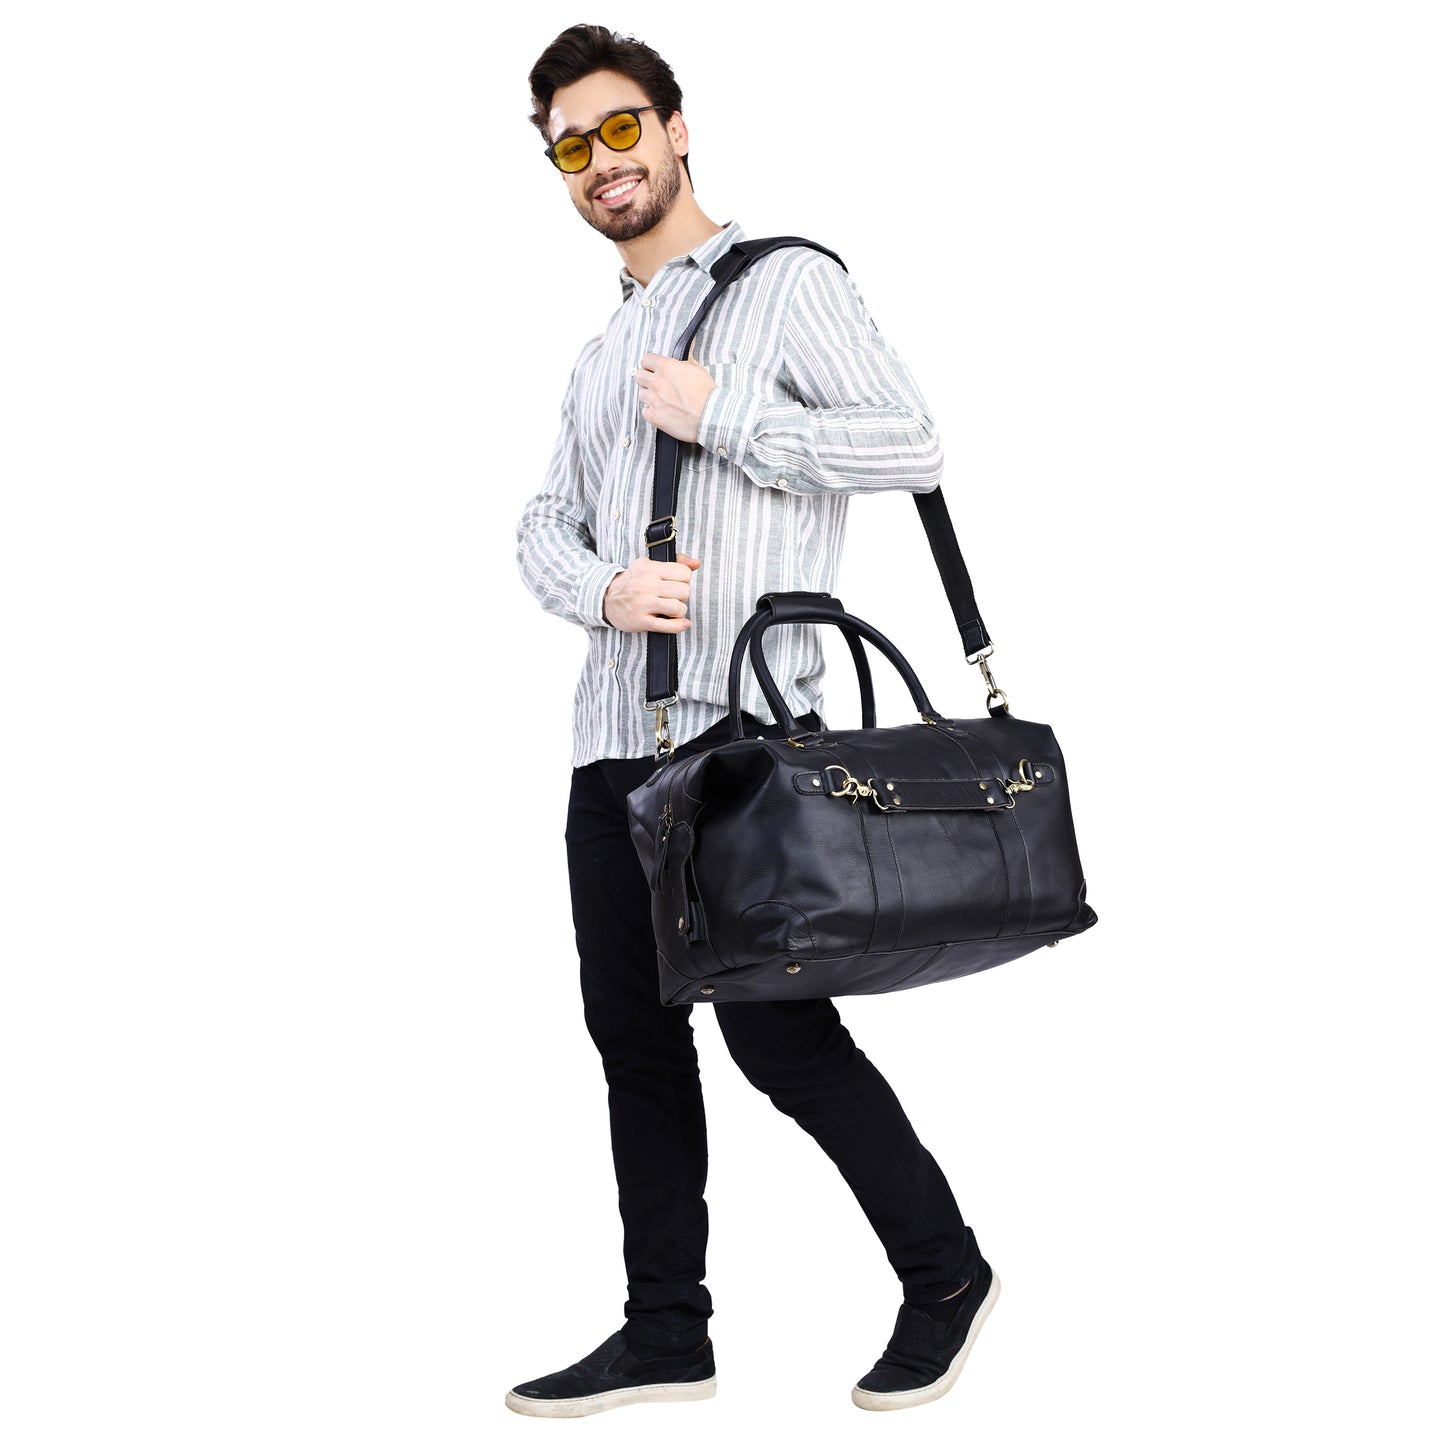 Martucci Tan Sling Bag Pu Leather Shoulder Bag for Men/Travel Bag/Cross  Body Bag/Office Business Bag/Messenger Bag/Stylish sling Bag for Men Tan -  Price in India | Flipkart.com